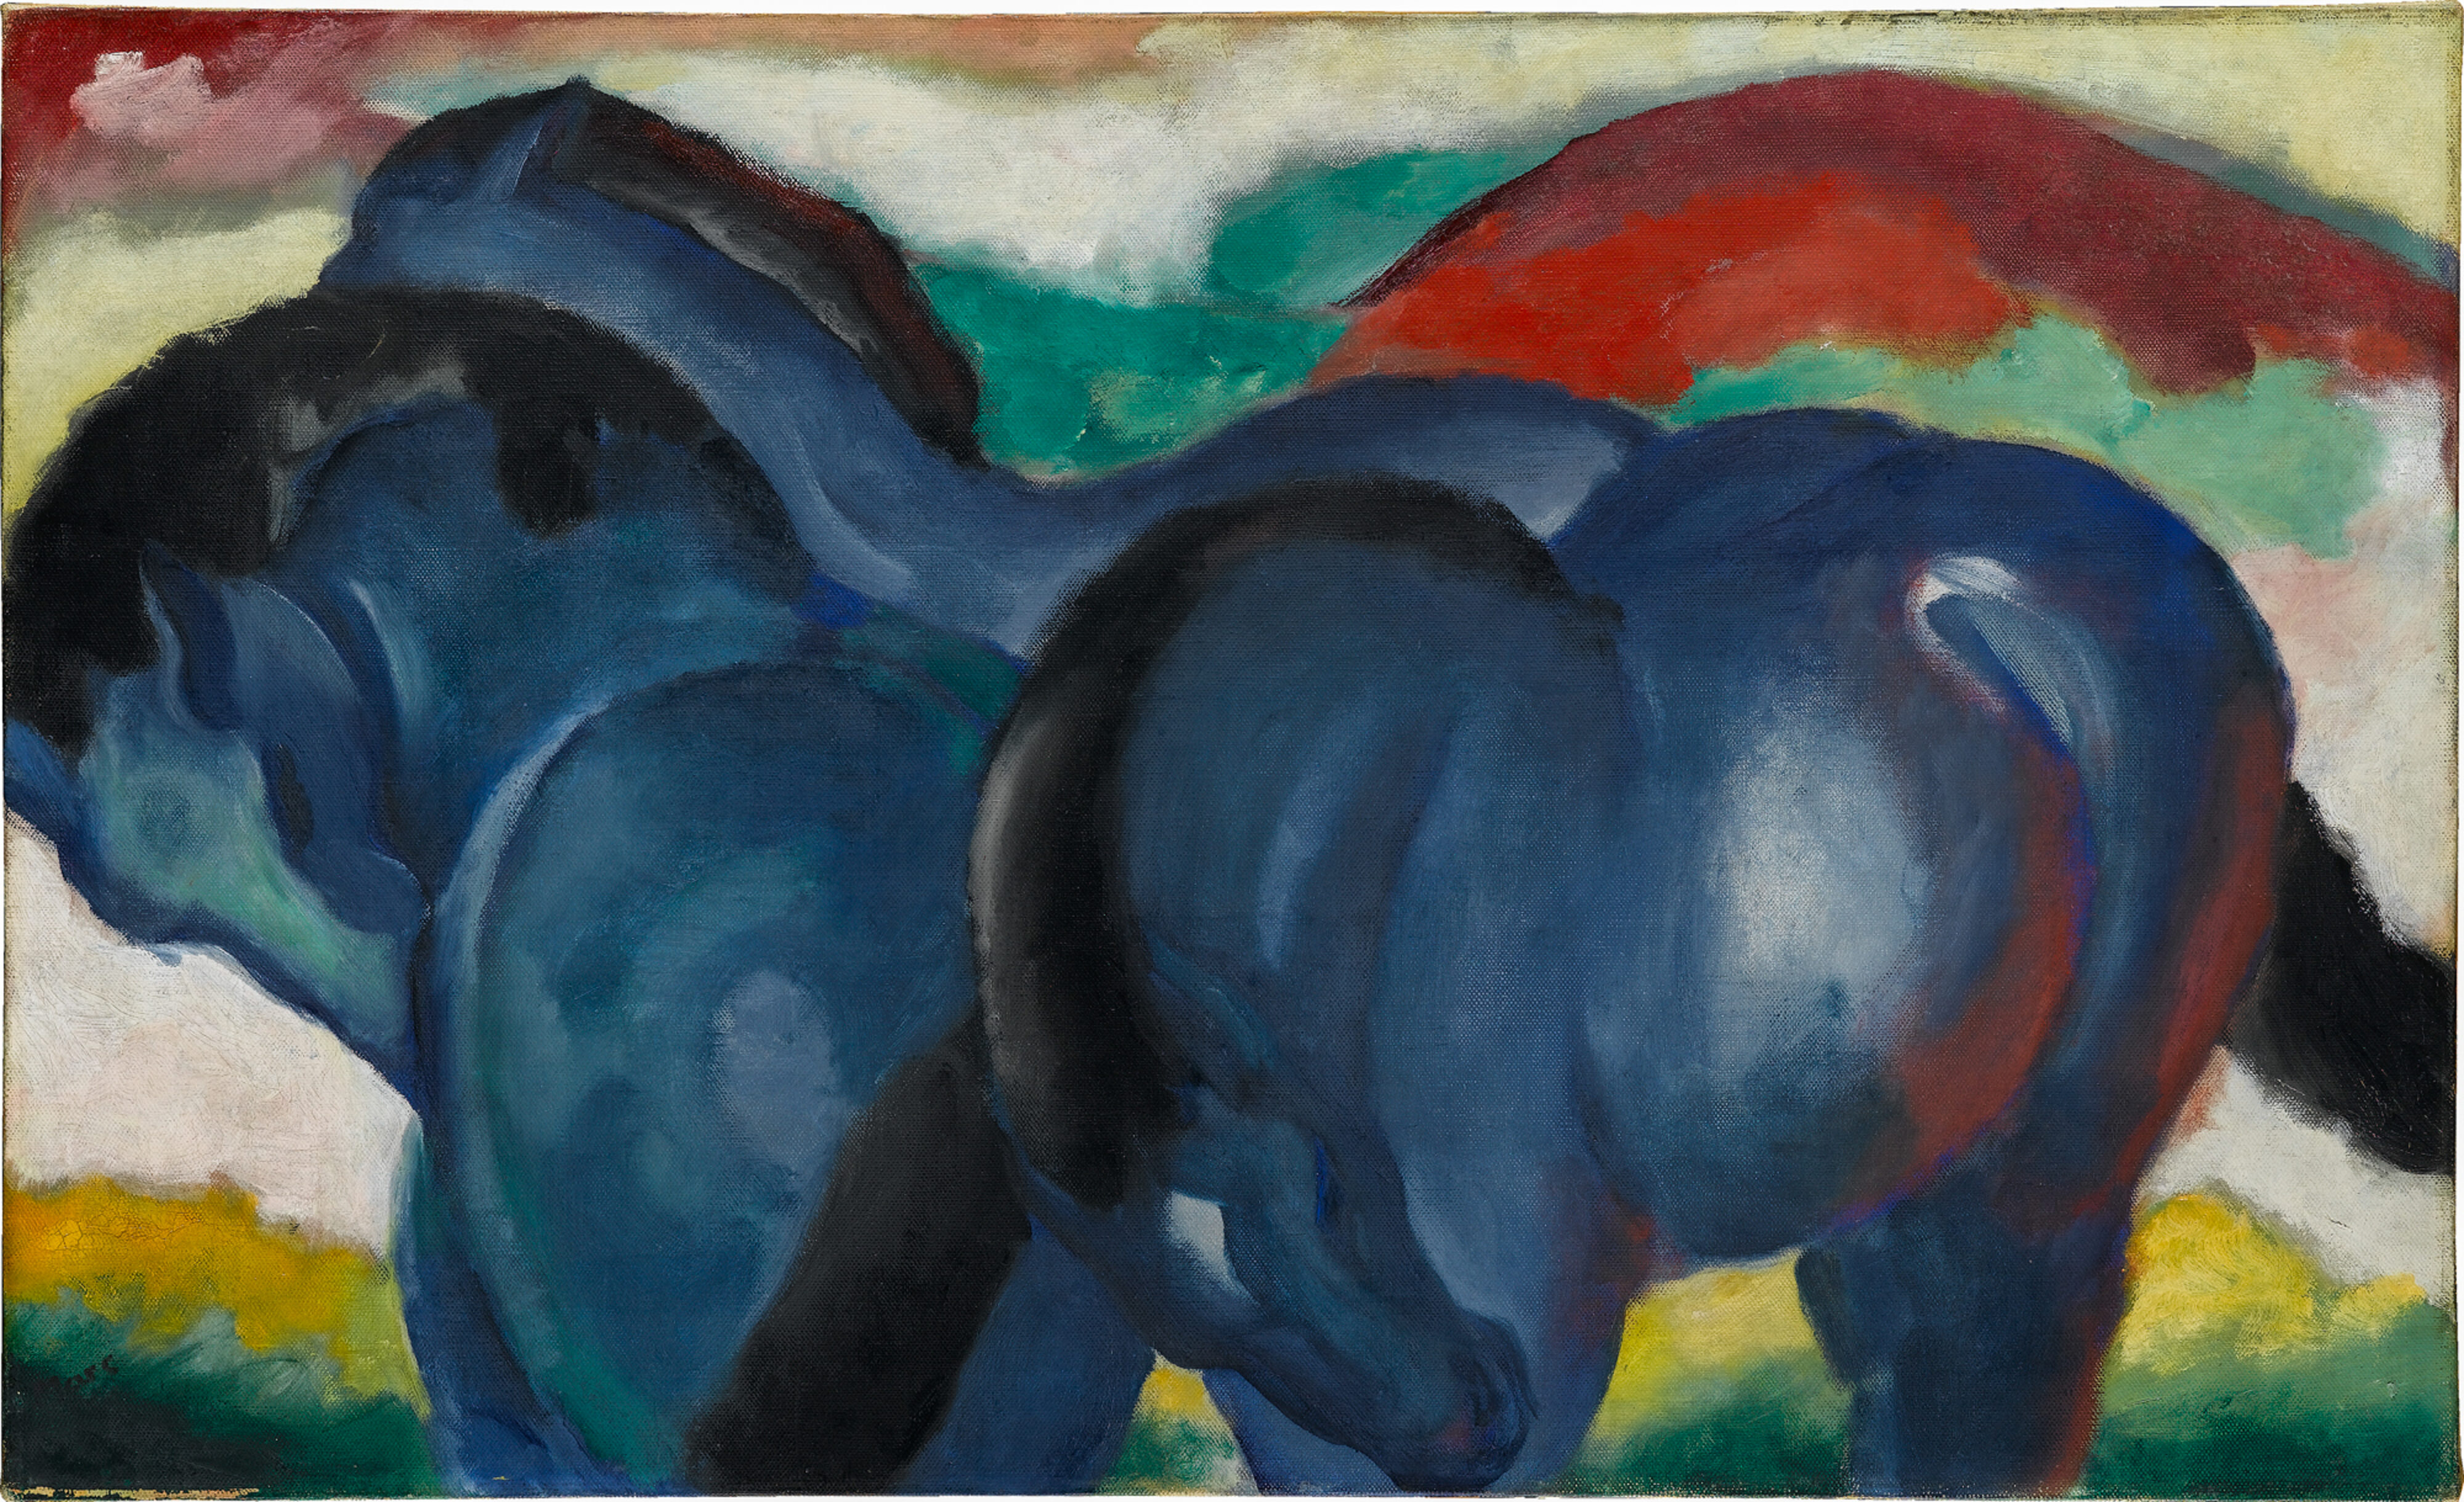 Blaues Land und Blauer Reiter, Franz Marc, Die blauen Pferde, 1911, Staatsgalerie Stuttgart